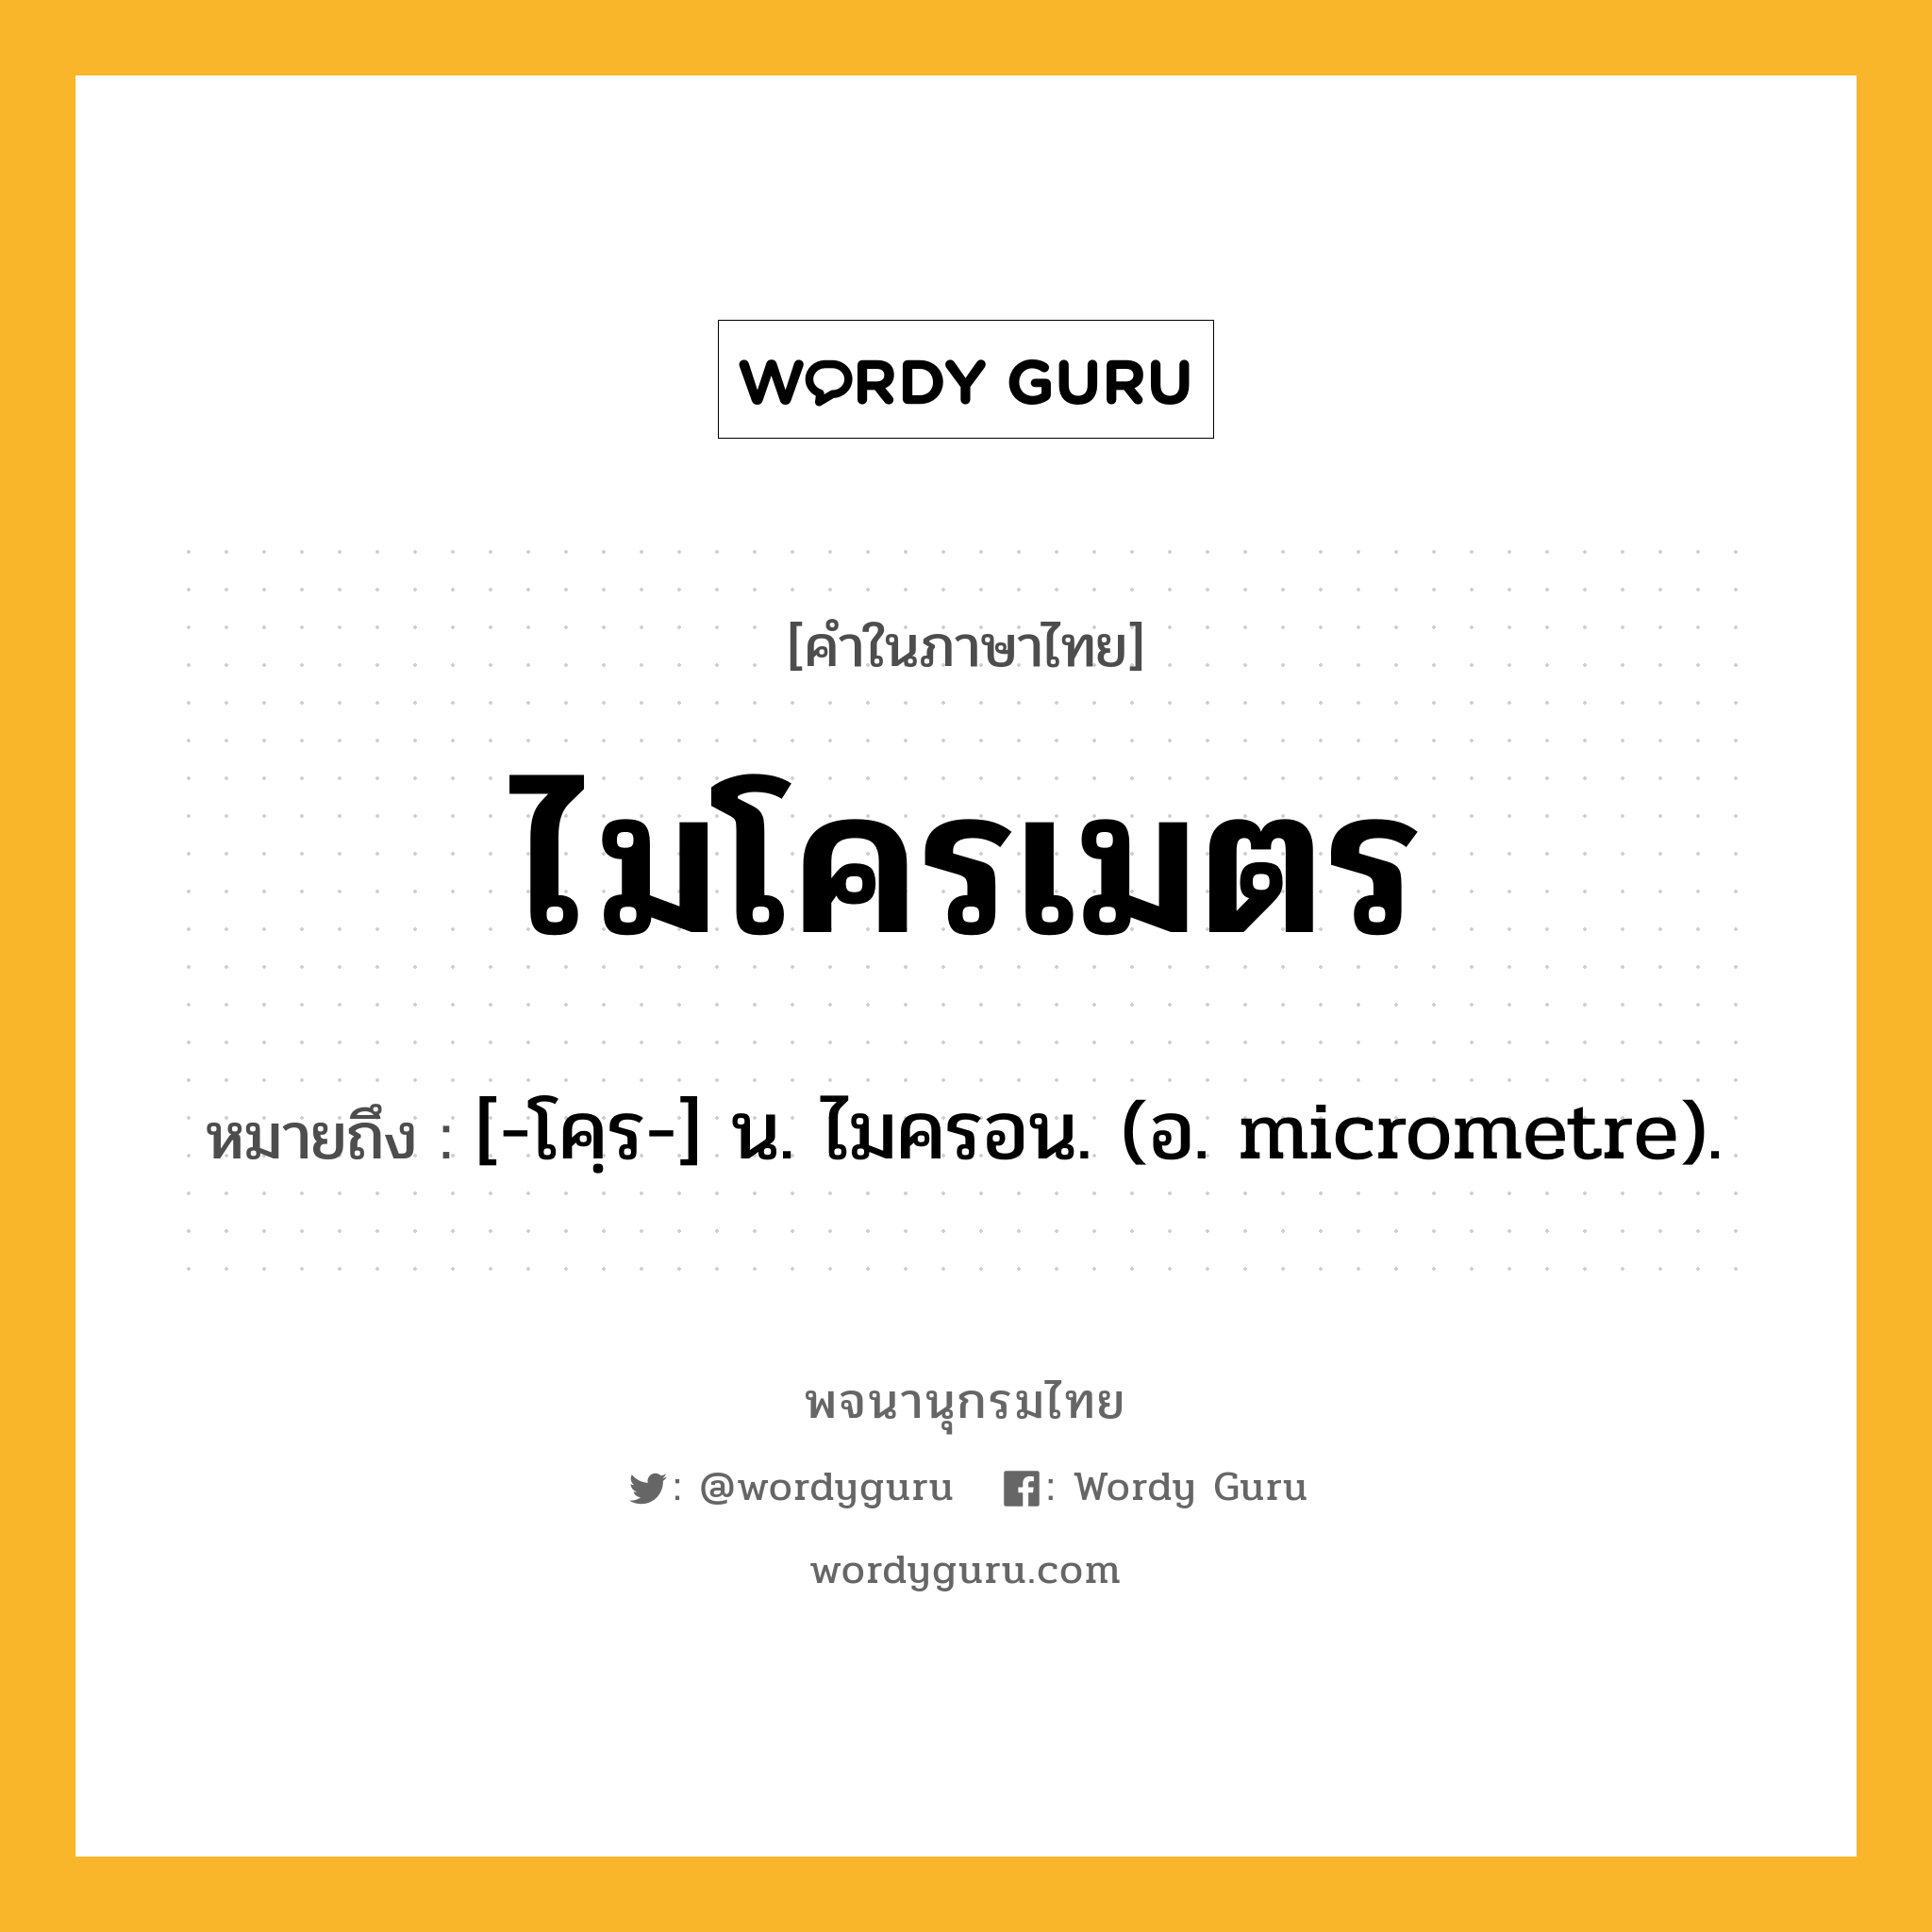 ไมโครเมตร ความหมาย หมายถึงอะไร?, คำในภาษาไทย ไมโครเมตร หมายถึง [-โคฺร-] น. ไมครอน. (อ. micrometre).